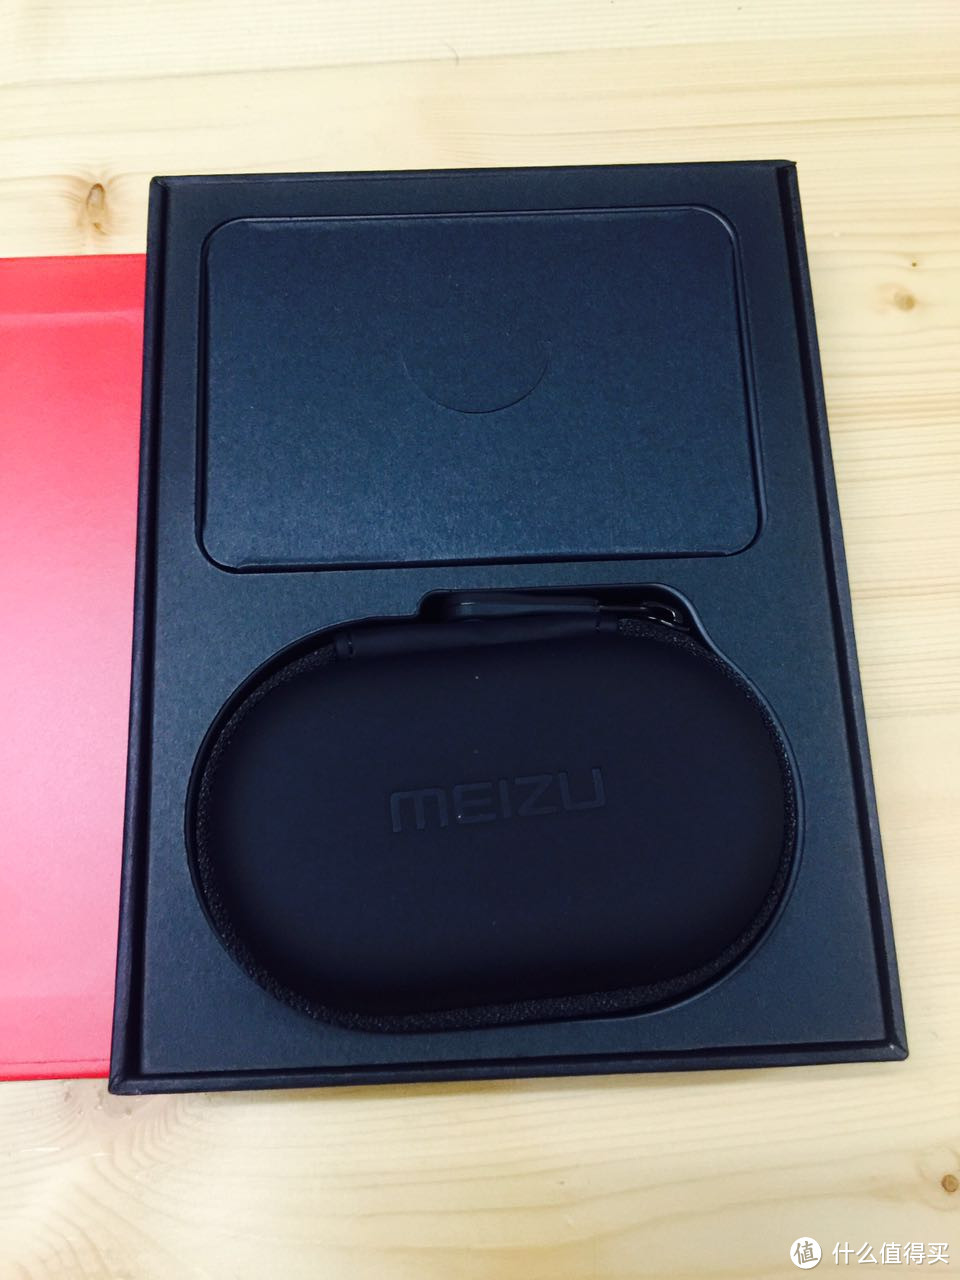 MEIZU 魅族 EP51 蓝牙耳机 使用测评报告